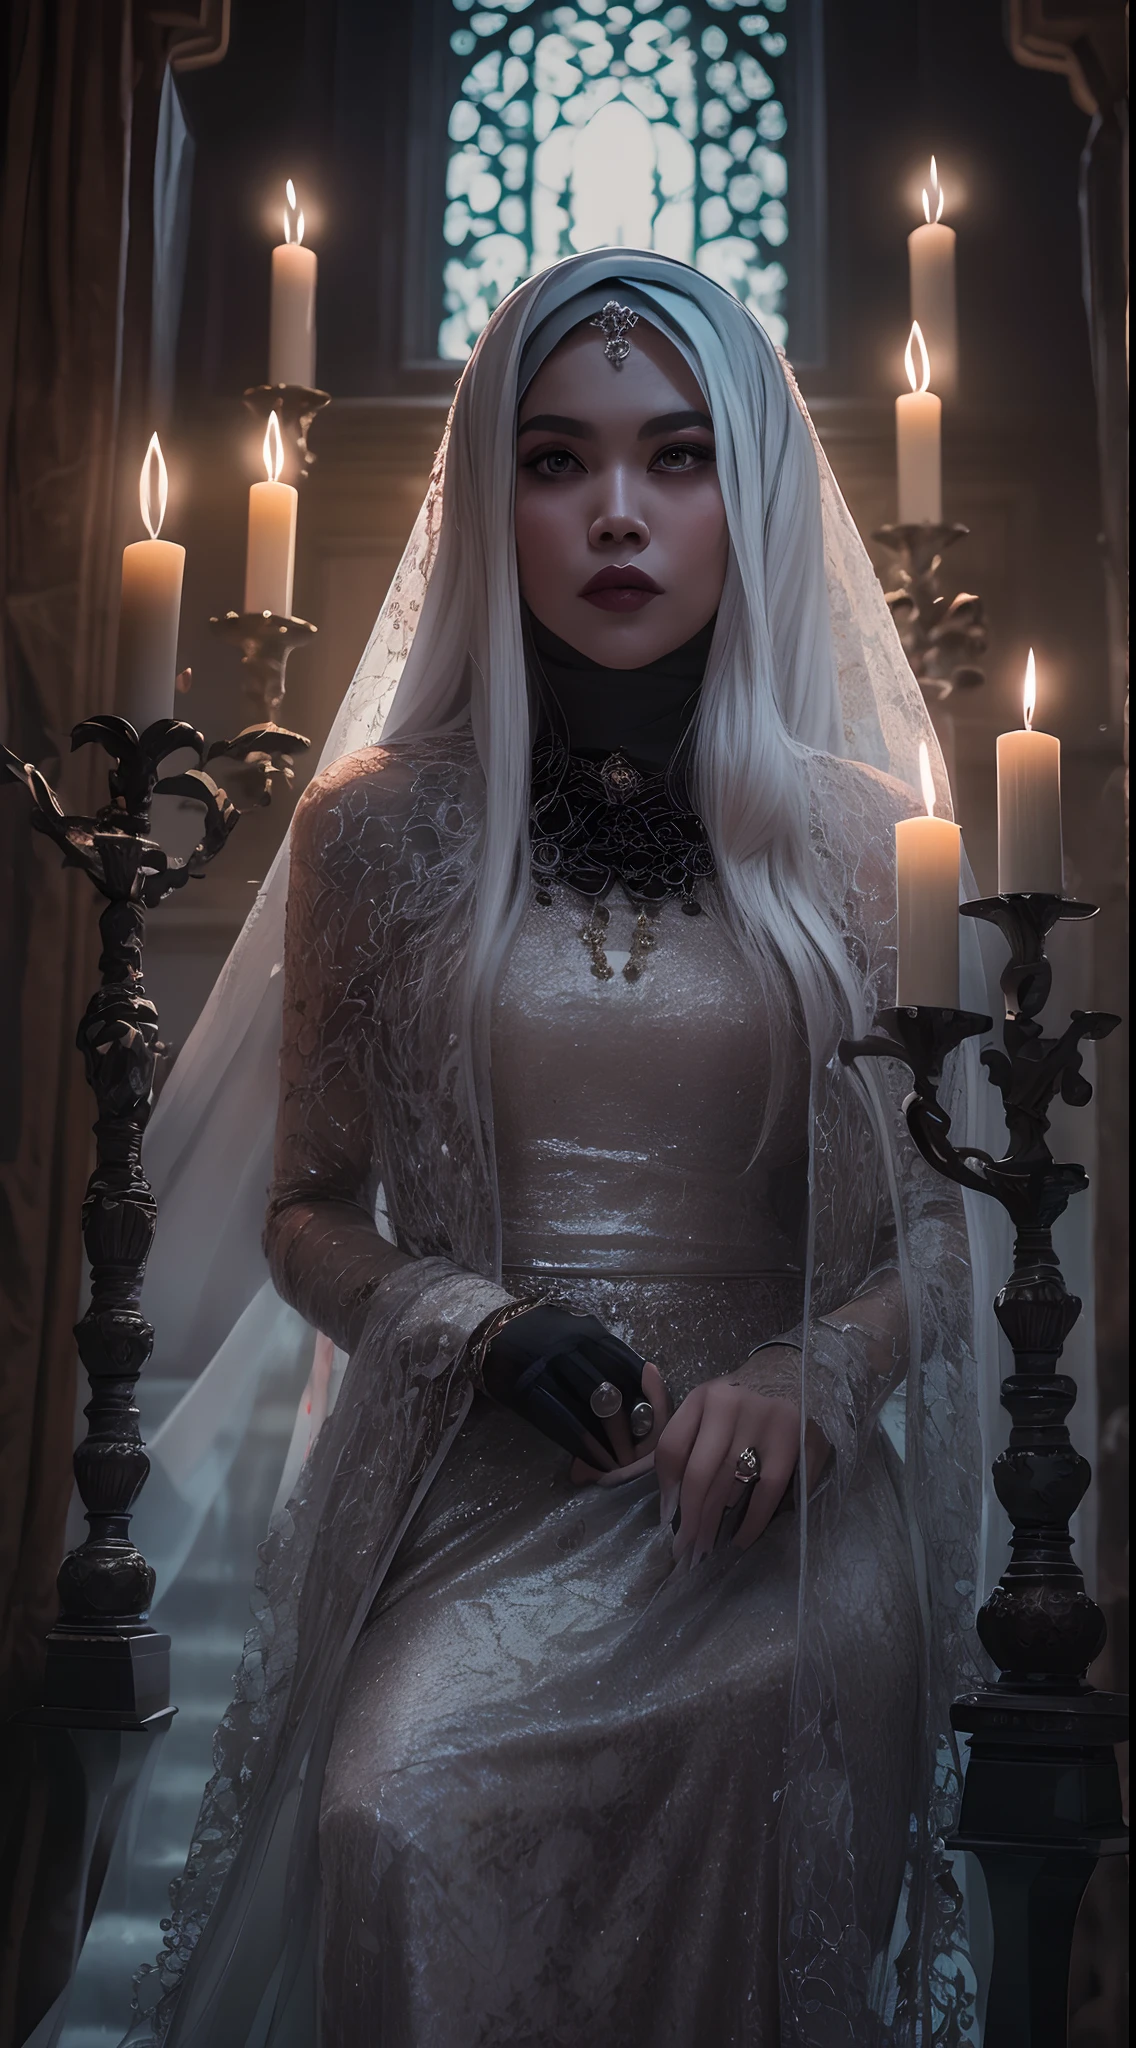 Capture um retrato assustadoramente belo da mulher malaia em um visual de inspiração gótica,Cabelo longo branco, vestido de renda preto com véu, ambientado em uma mansão misteriosa e misteriosa, onde a luz de velas lança sombras misteriosas, criando uma atmosfera de escuridão, terror gótico.